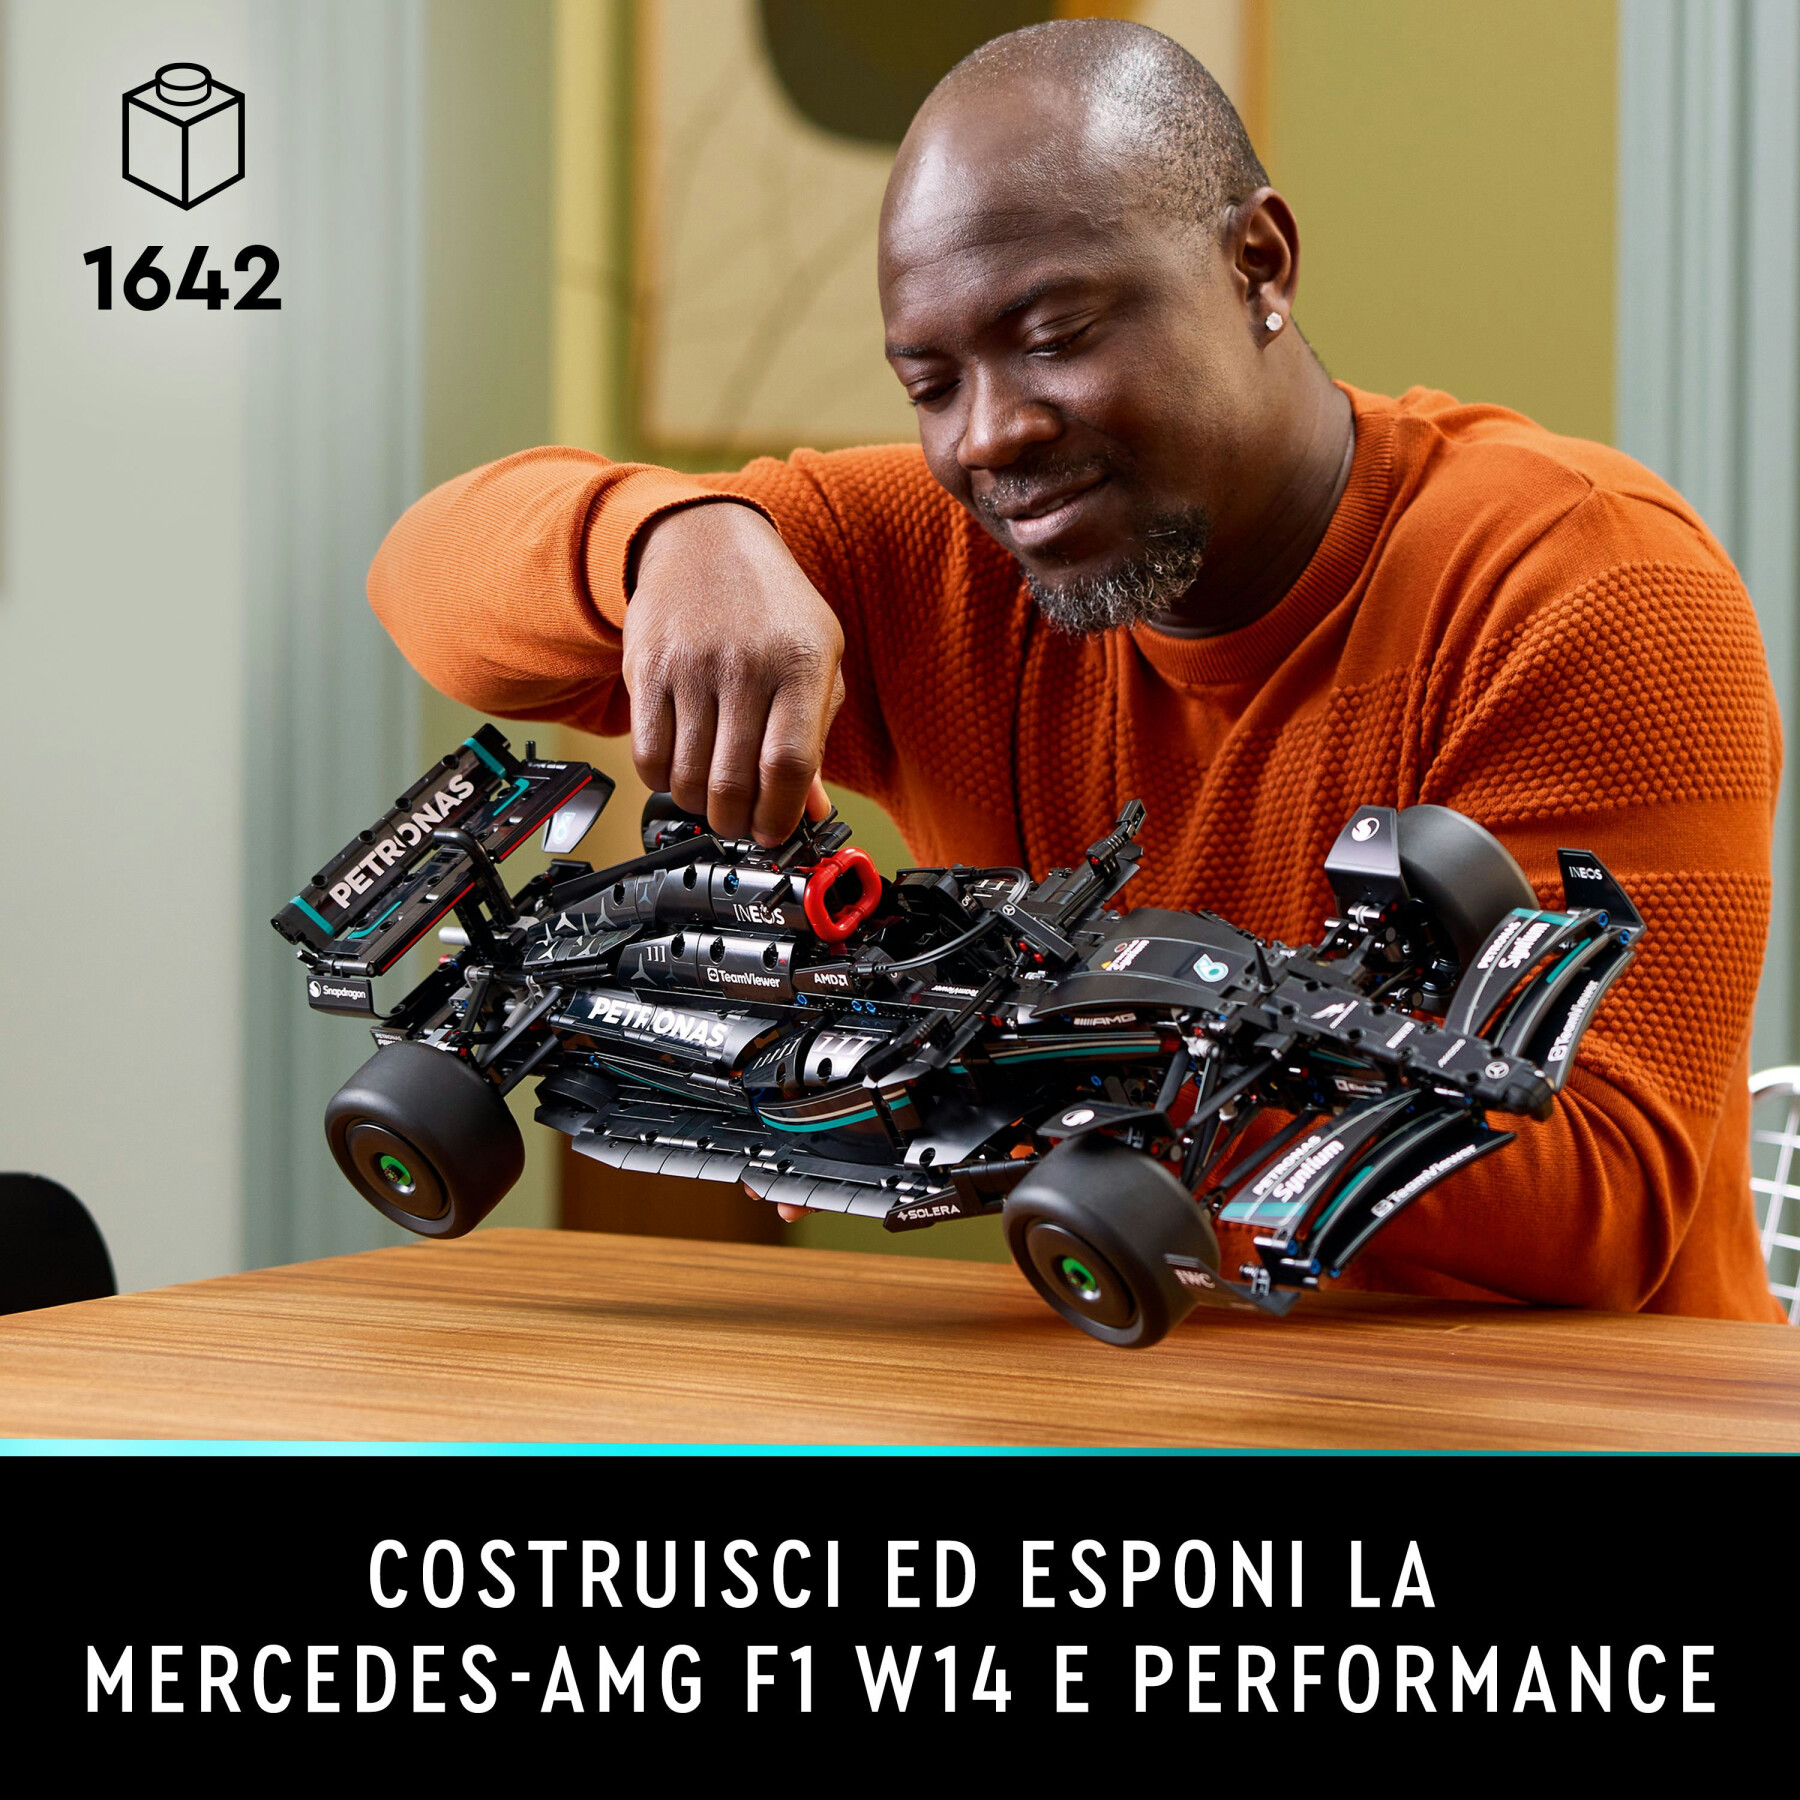 Lego technic 42171 mercedes-amg f1 w14 e performance, modellino da costruire di auto da corsa scala 1:8, idea regalo adulti - LEGO TECHNIC